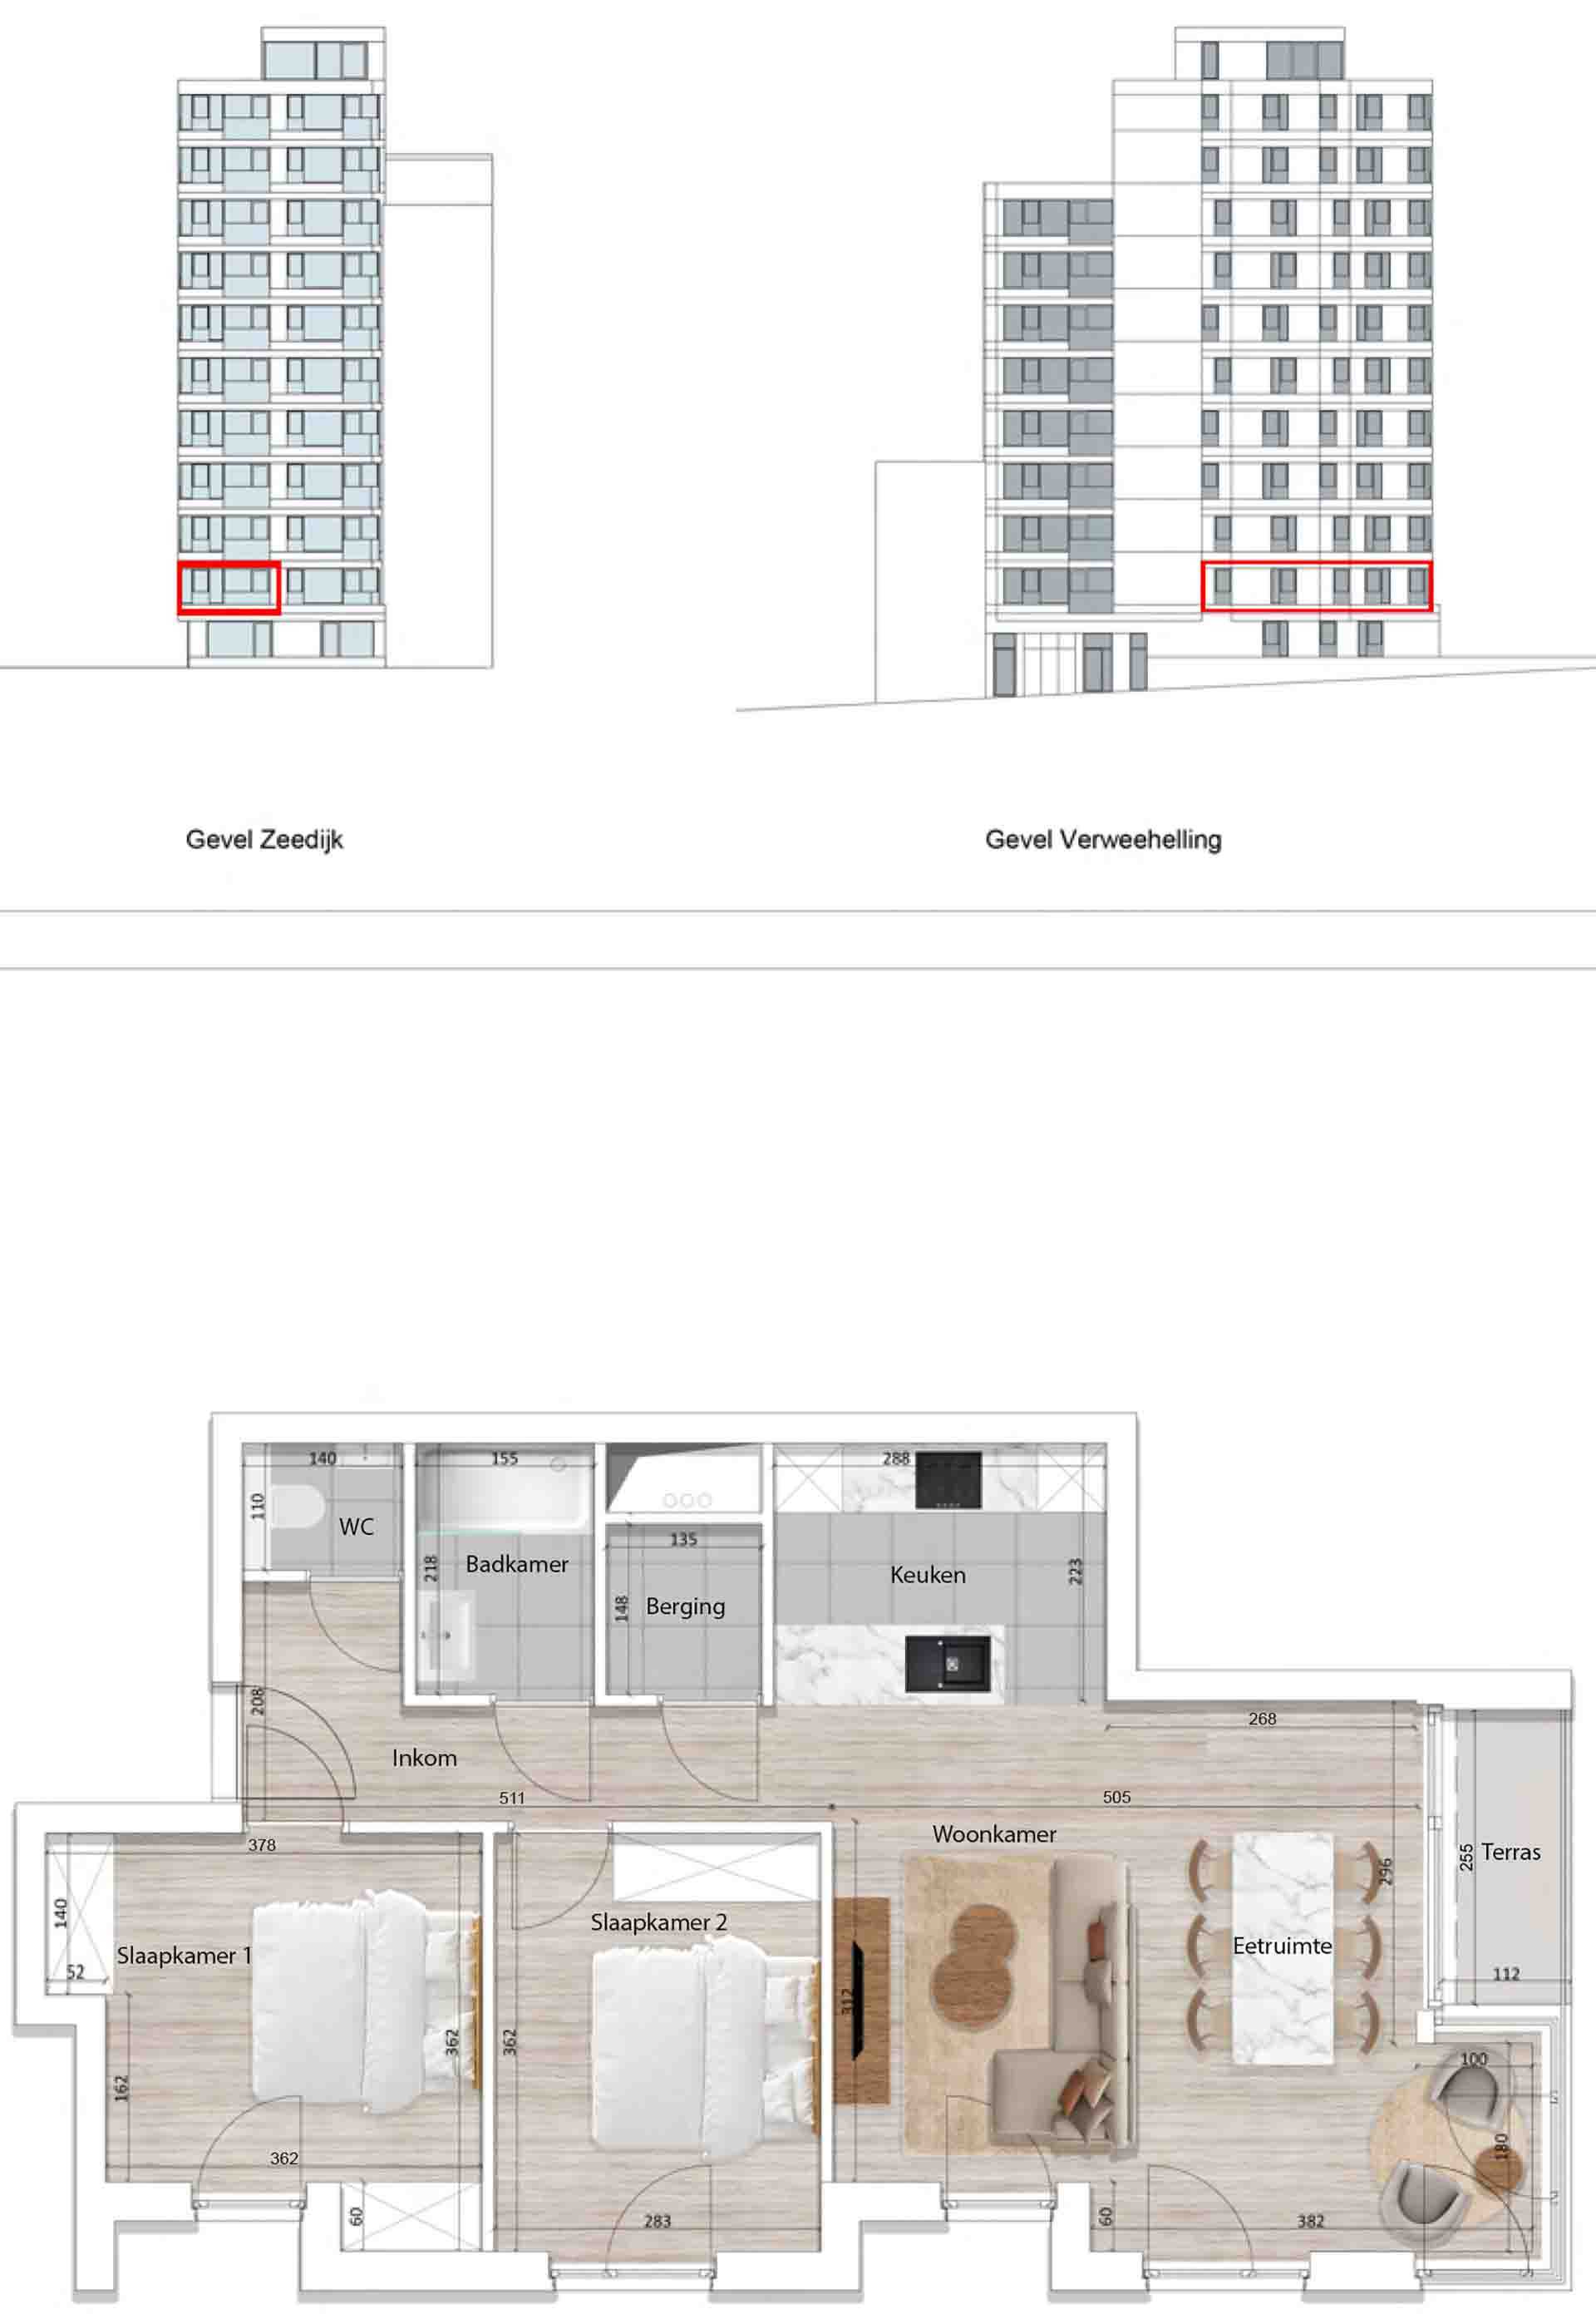 Residentie <br/> Pier - image appartement-te-koop-blankenberge-residentie-pier-plan-0102 on https://hoprom.be